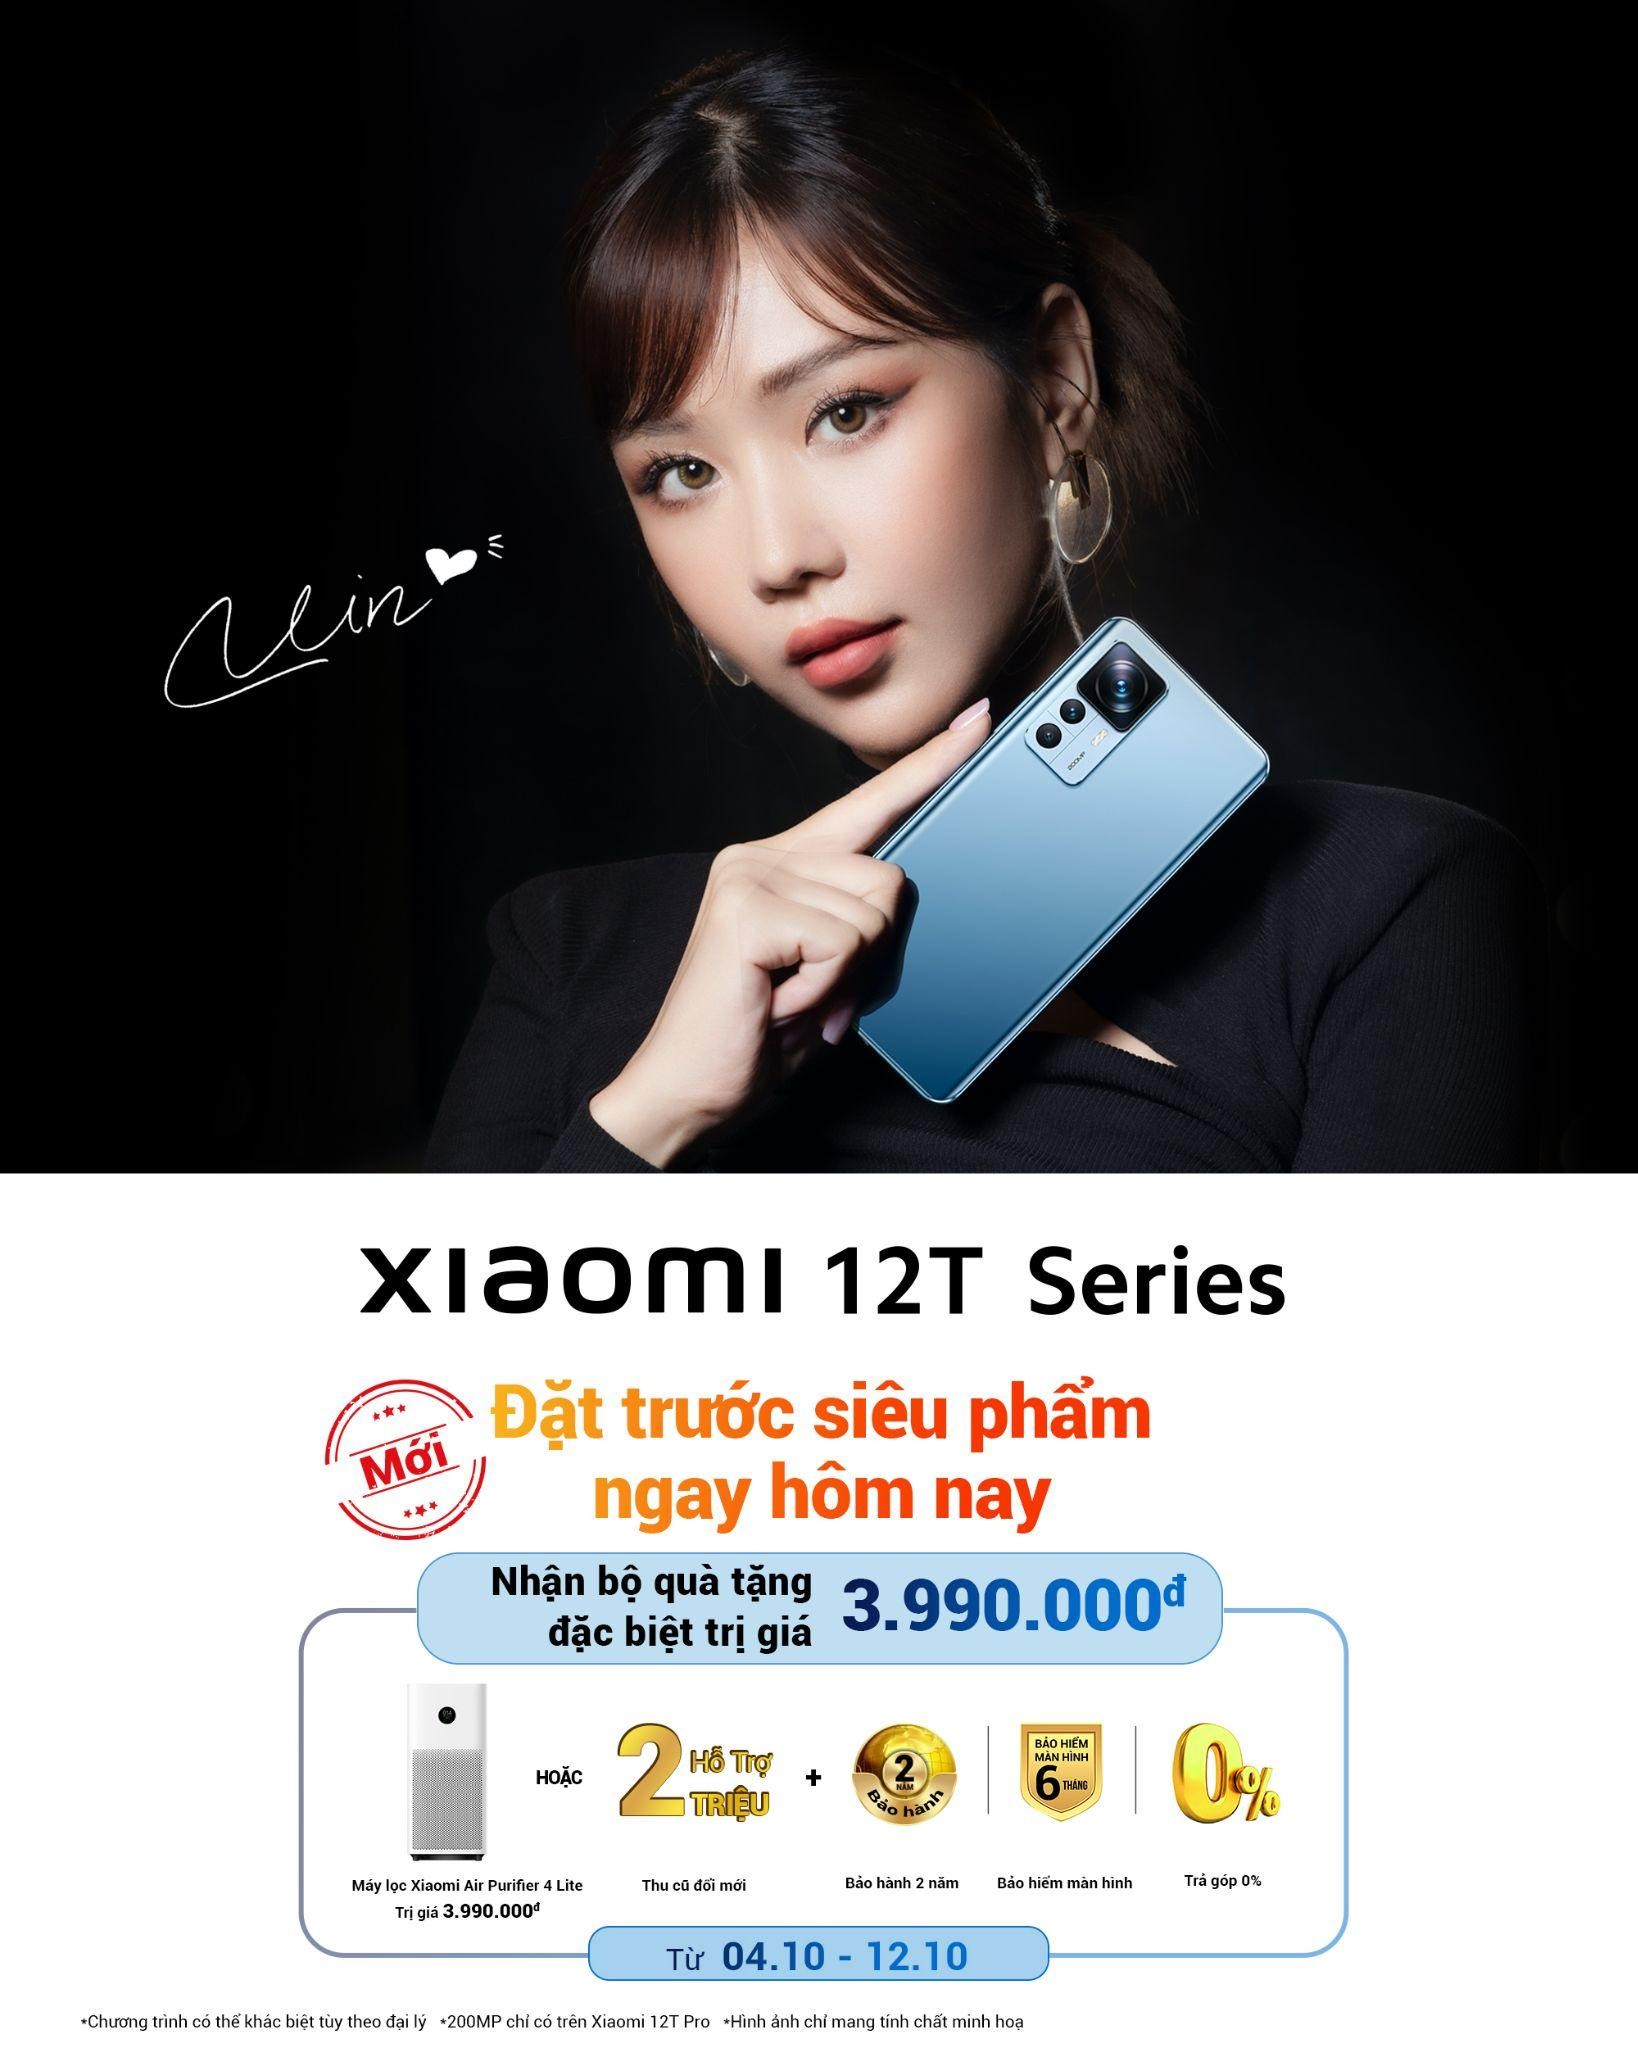 Xiaomi 12T Series sở hữu hệ thống nhiếp ảnh hàng đầu cùng năng lượng đột phá mang đến người dùng Việt Nam cơ hội sở hữu với ưu đãi lên đến 4 triệu đồng - ảnh 7